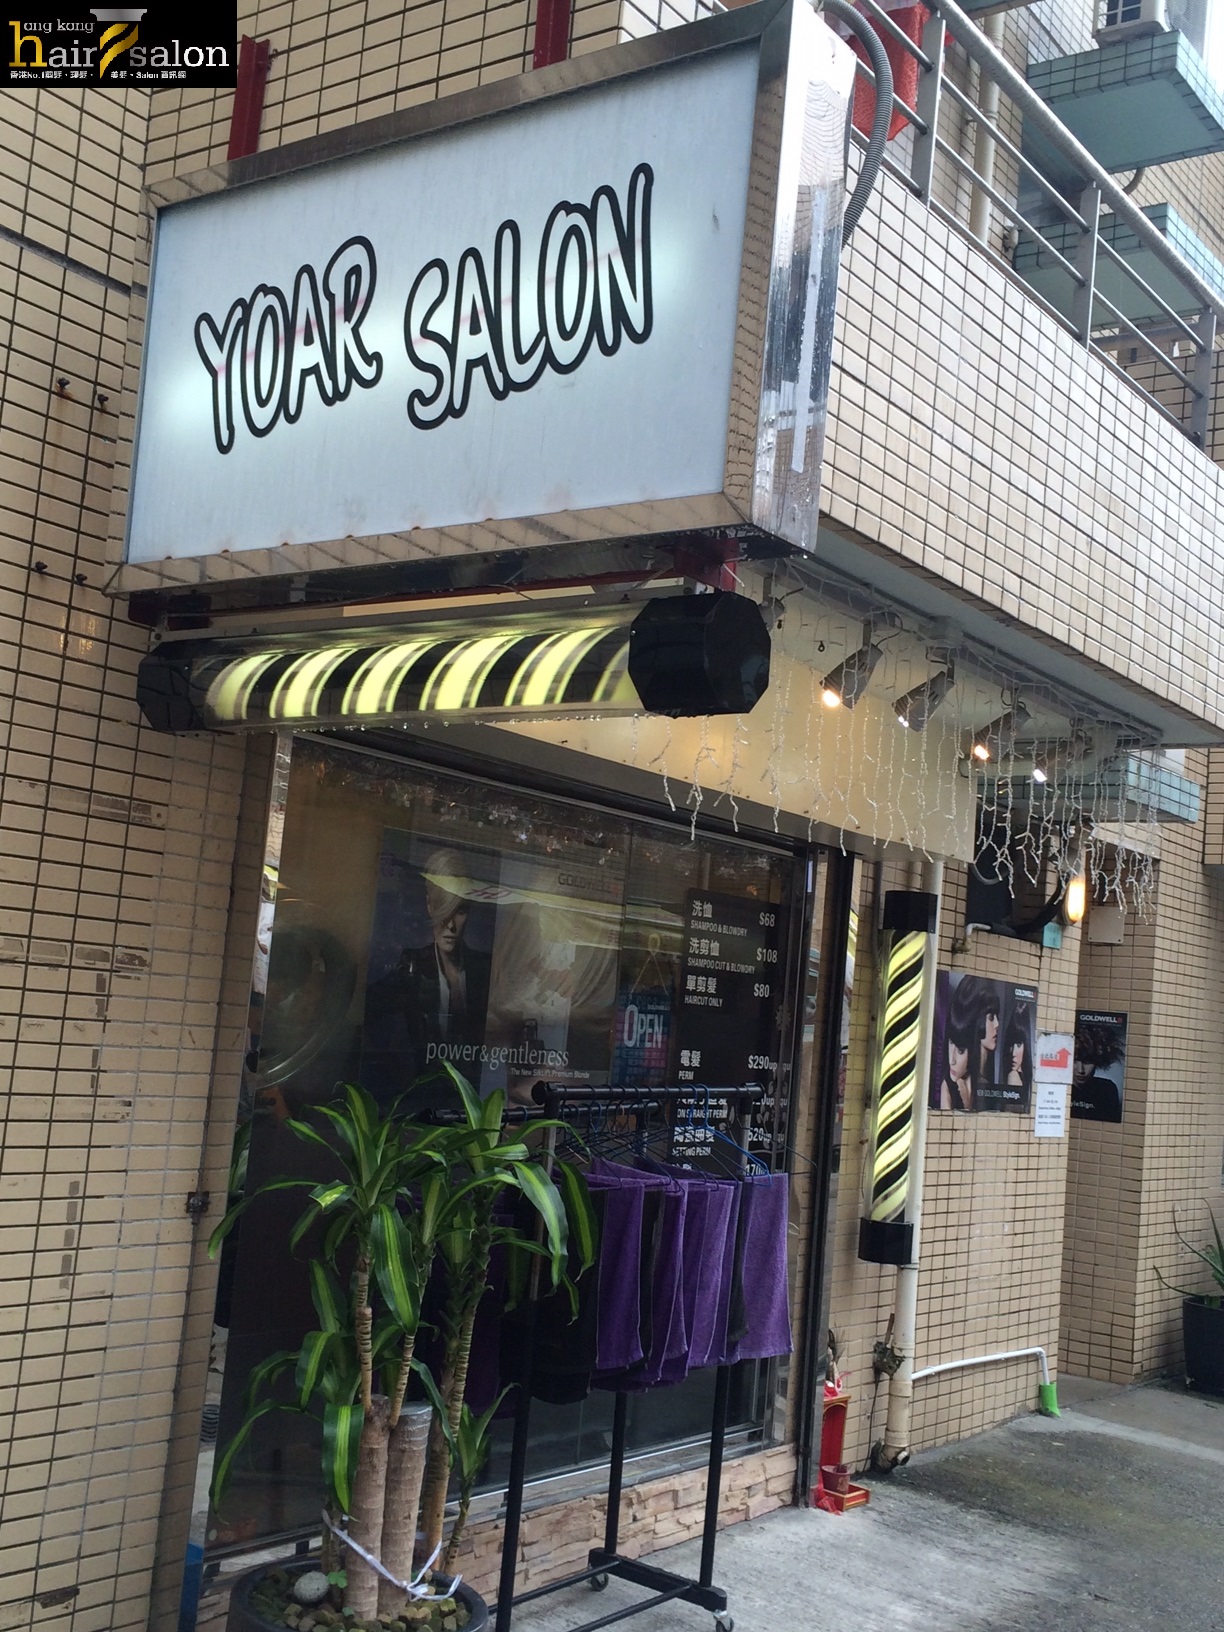 髮型屋: Yoar Salon (馬灣)